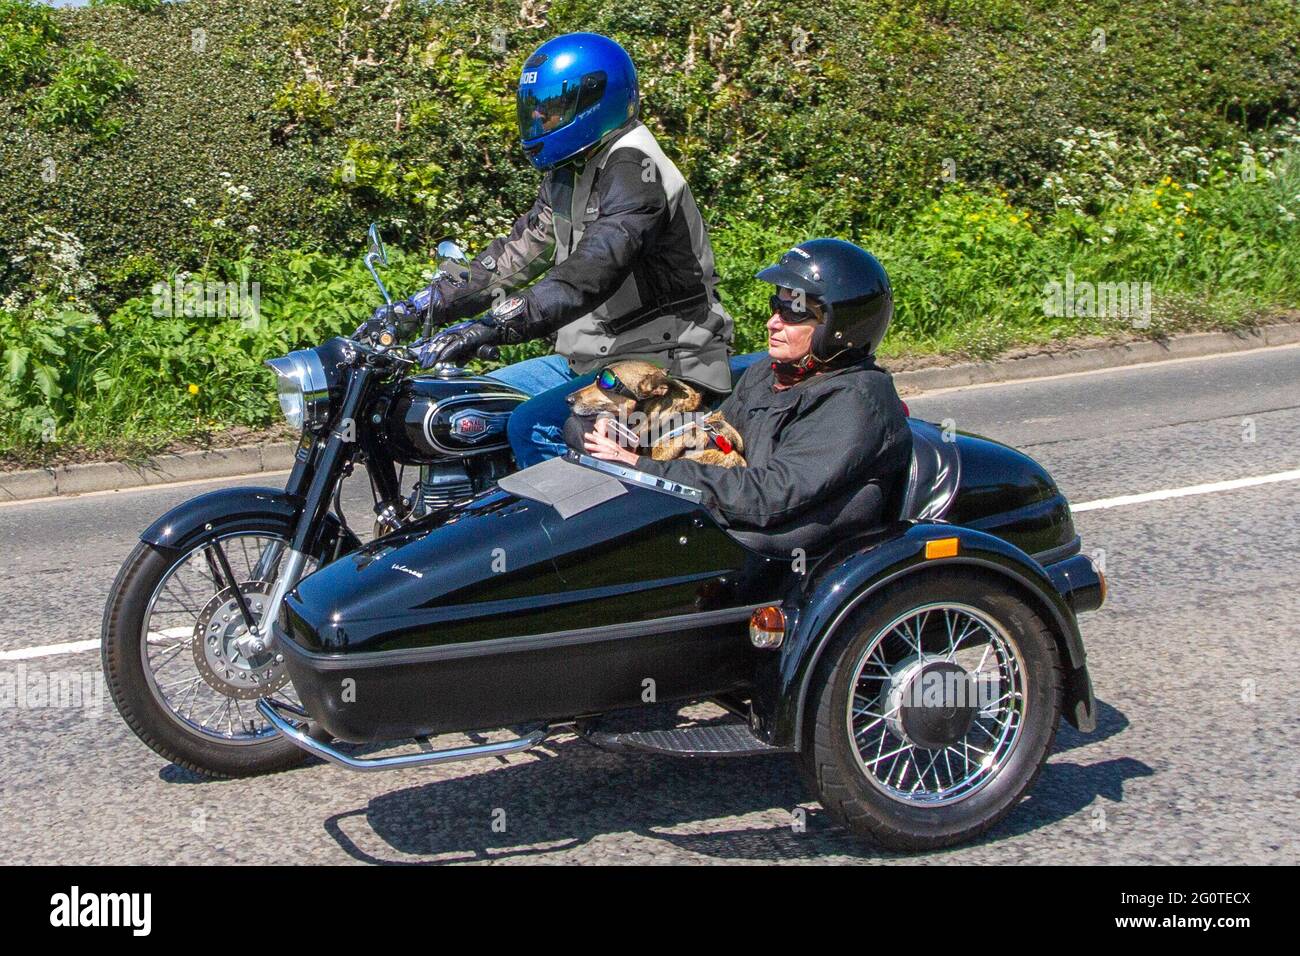 Hundeschlittenfahrt im Motorrad-Beiwagen. 2016 Royal Enfield Bullet EFI 499 ccm Motorrad Beiwagen mit Beifahrer und Hund. auf dem Weg zur Capesthorne Hall Classic May Bike Show, Cheshire, Großbritannien Stockfoto